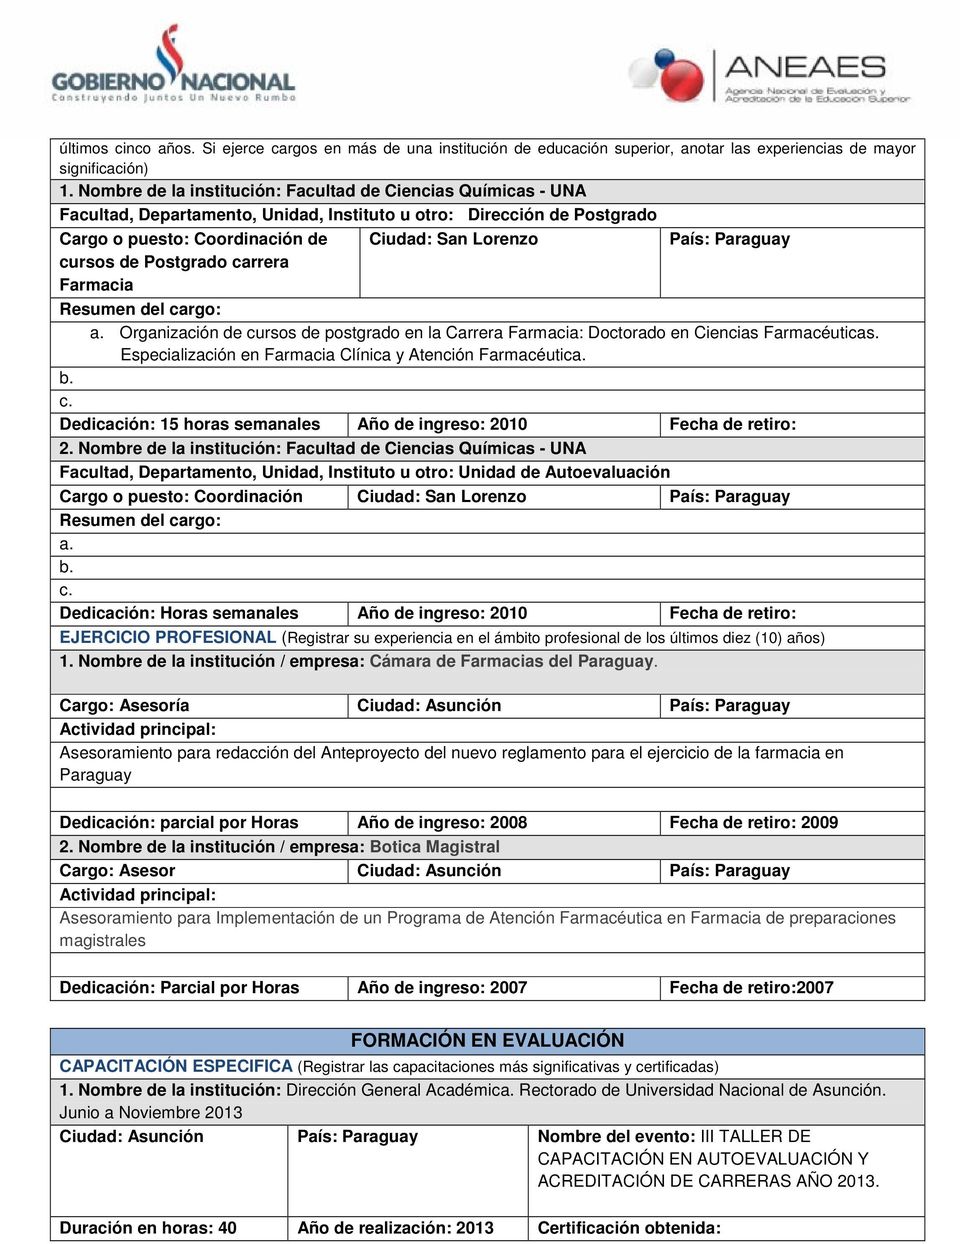 Paraguay cursos de Postgrado carrera Farmacia Resumen del cargo: a. Organización de cursos de postgrado en la Carrera Farmacia: Doctorado en Ciencias Farmacéuticas.